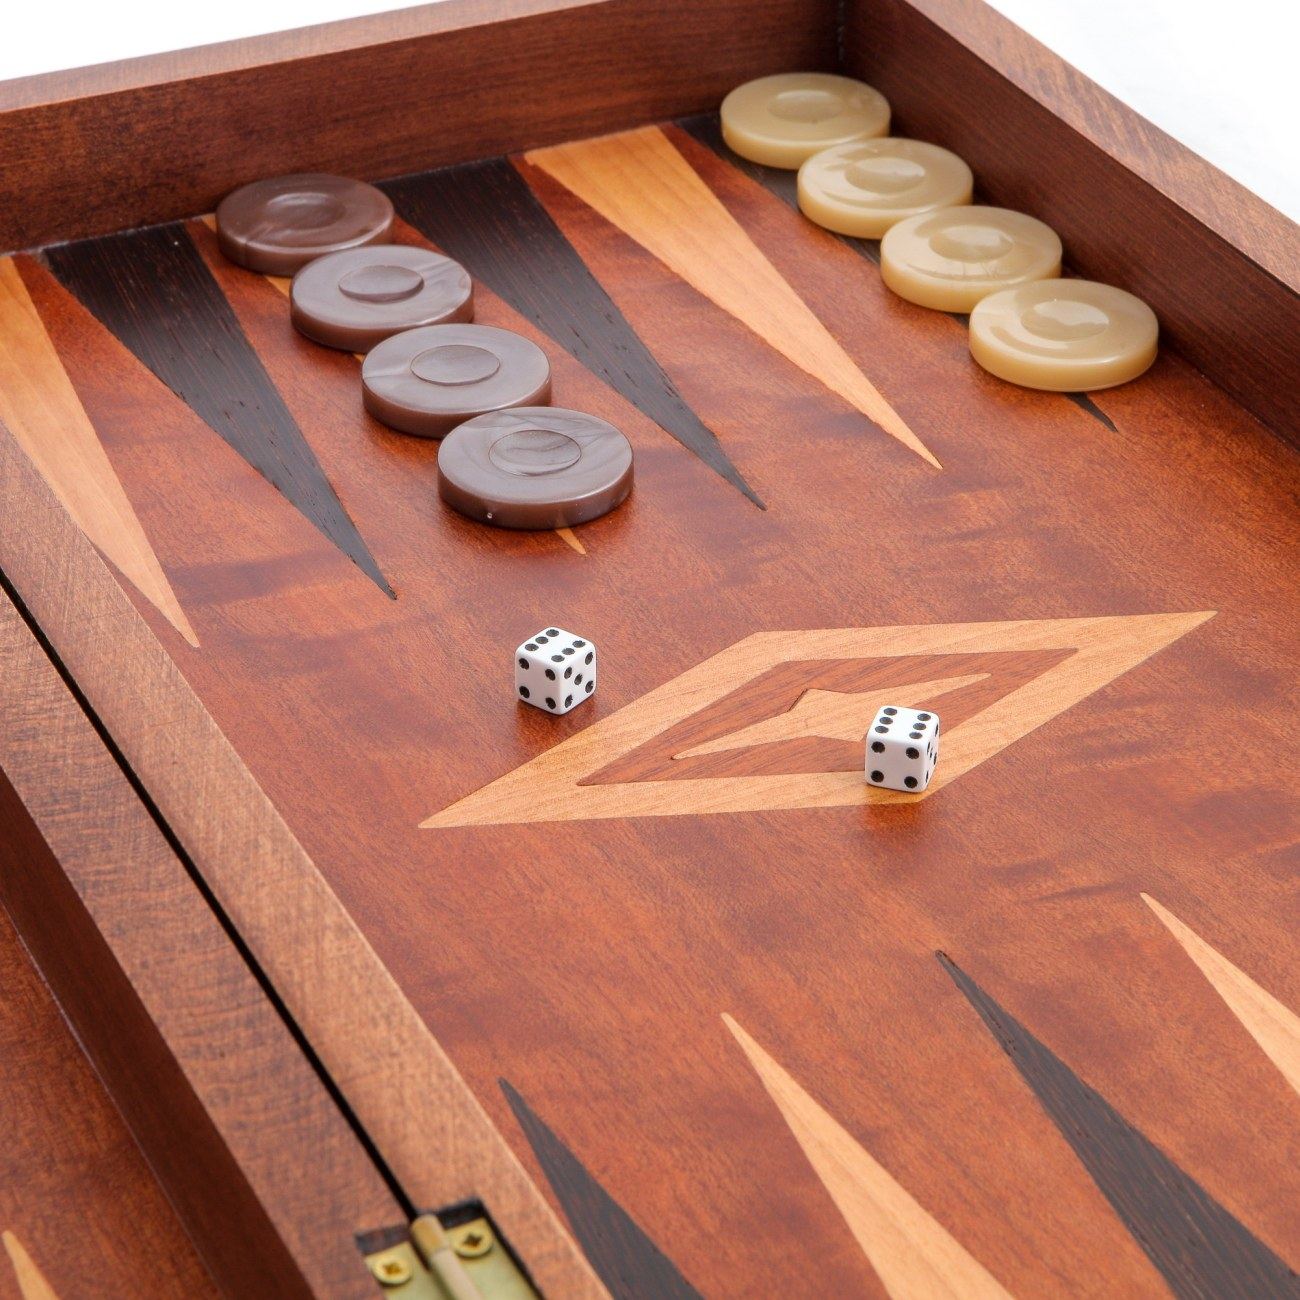 Backgammon Game Set Wooden Handmade The Donkey Inlaid Design Large